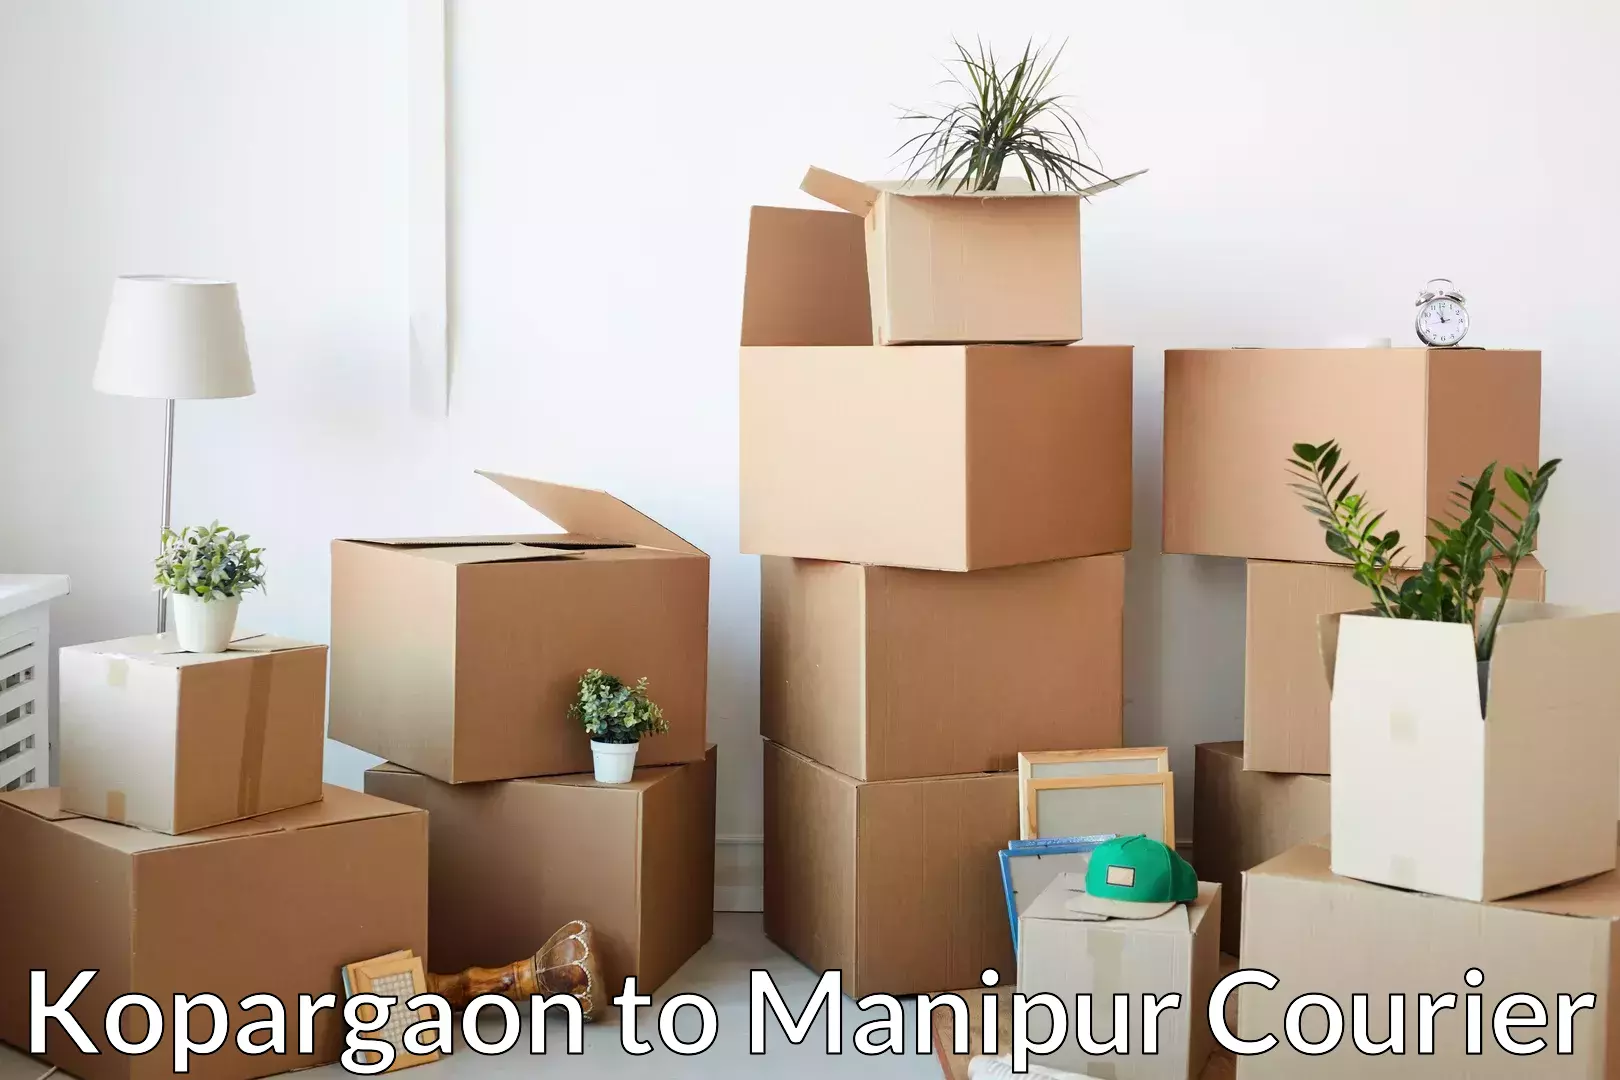 Professional moving company Kopargaon to Moirang